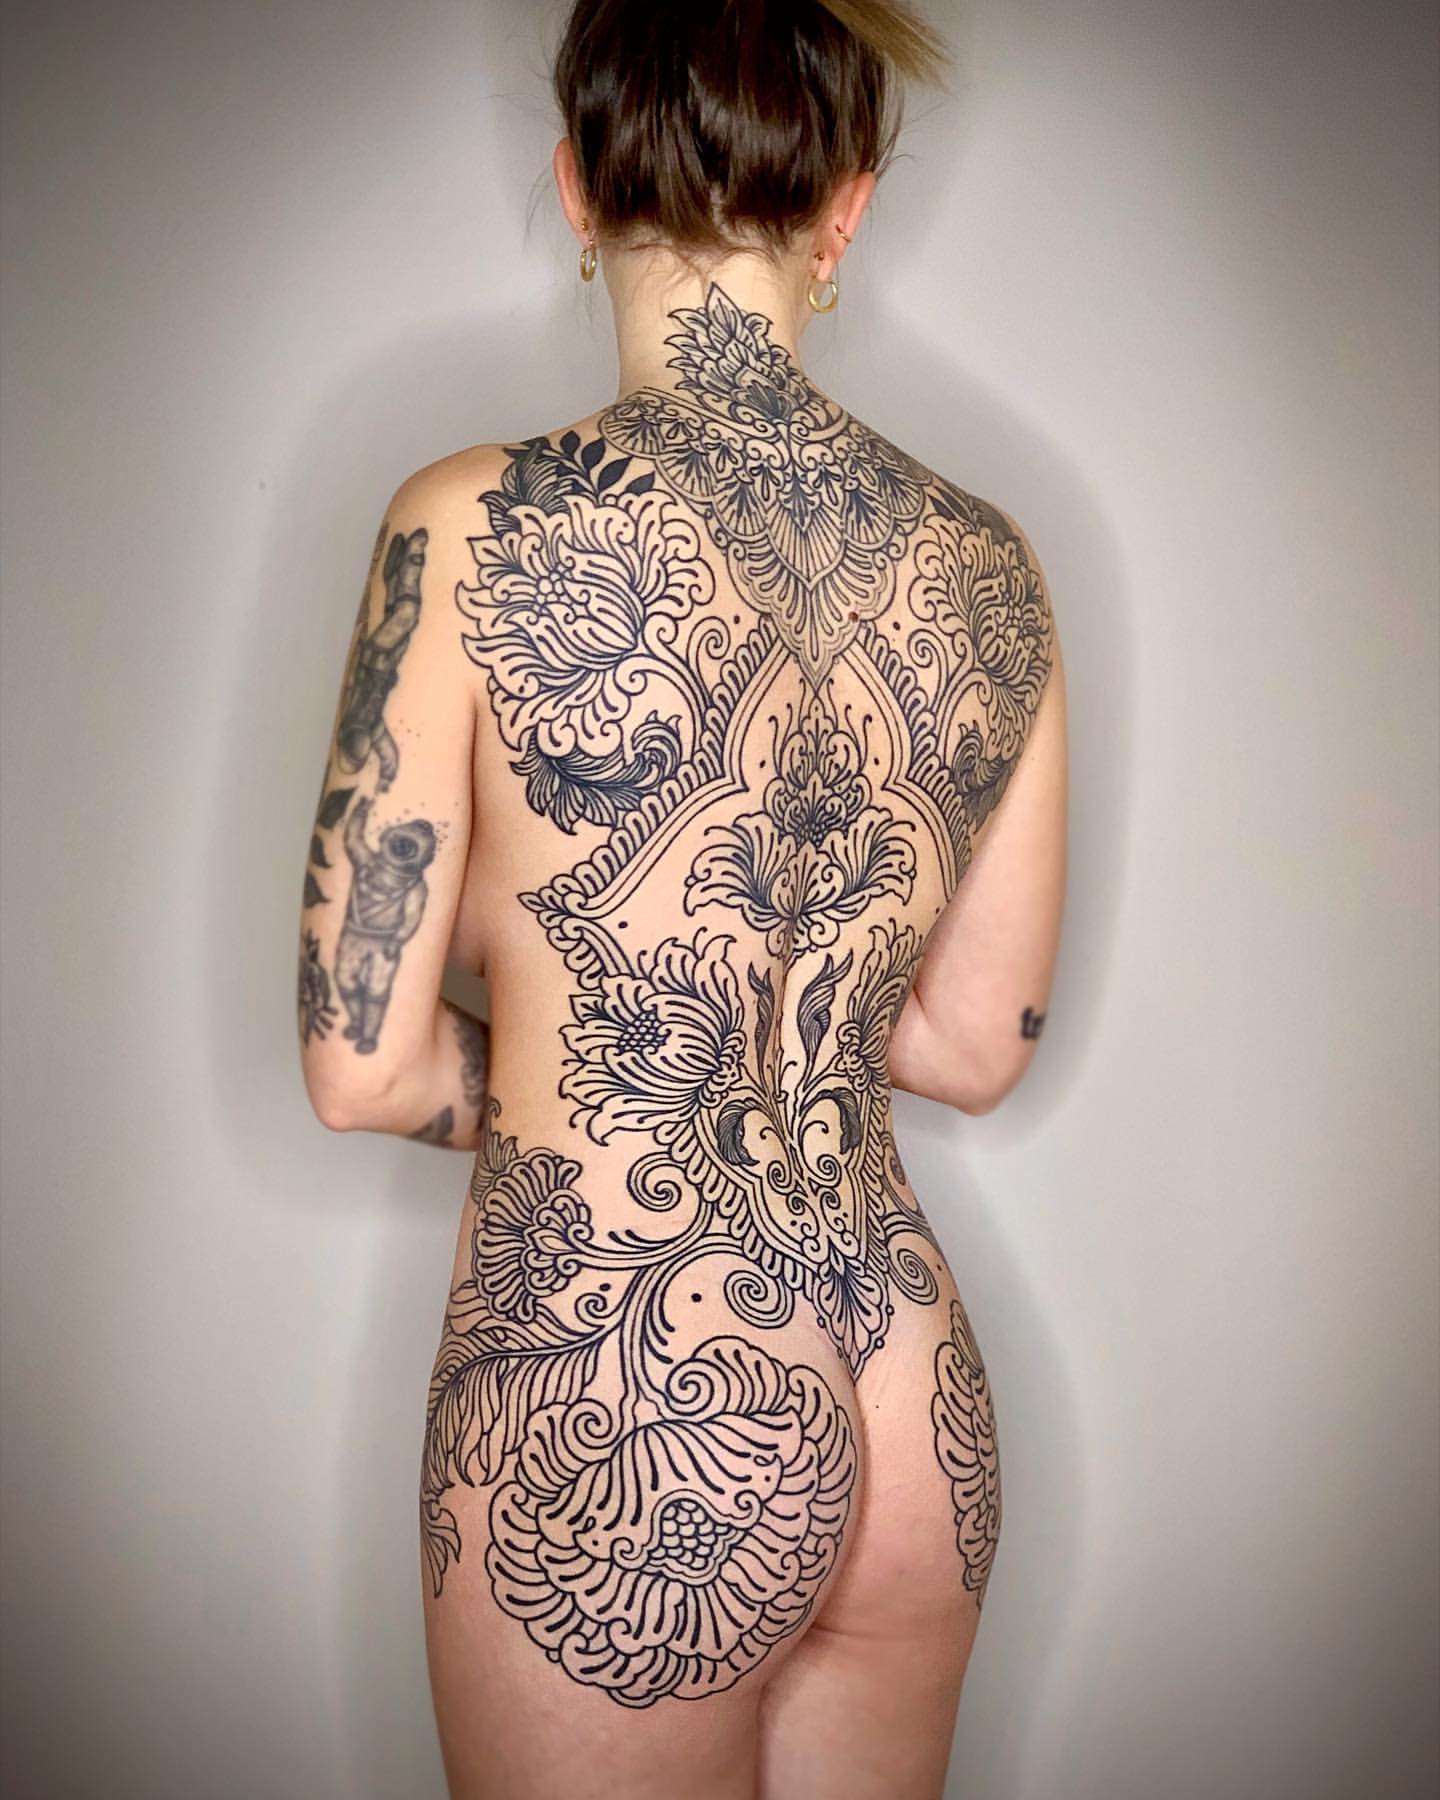 Full Back Tattoos for Women 20